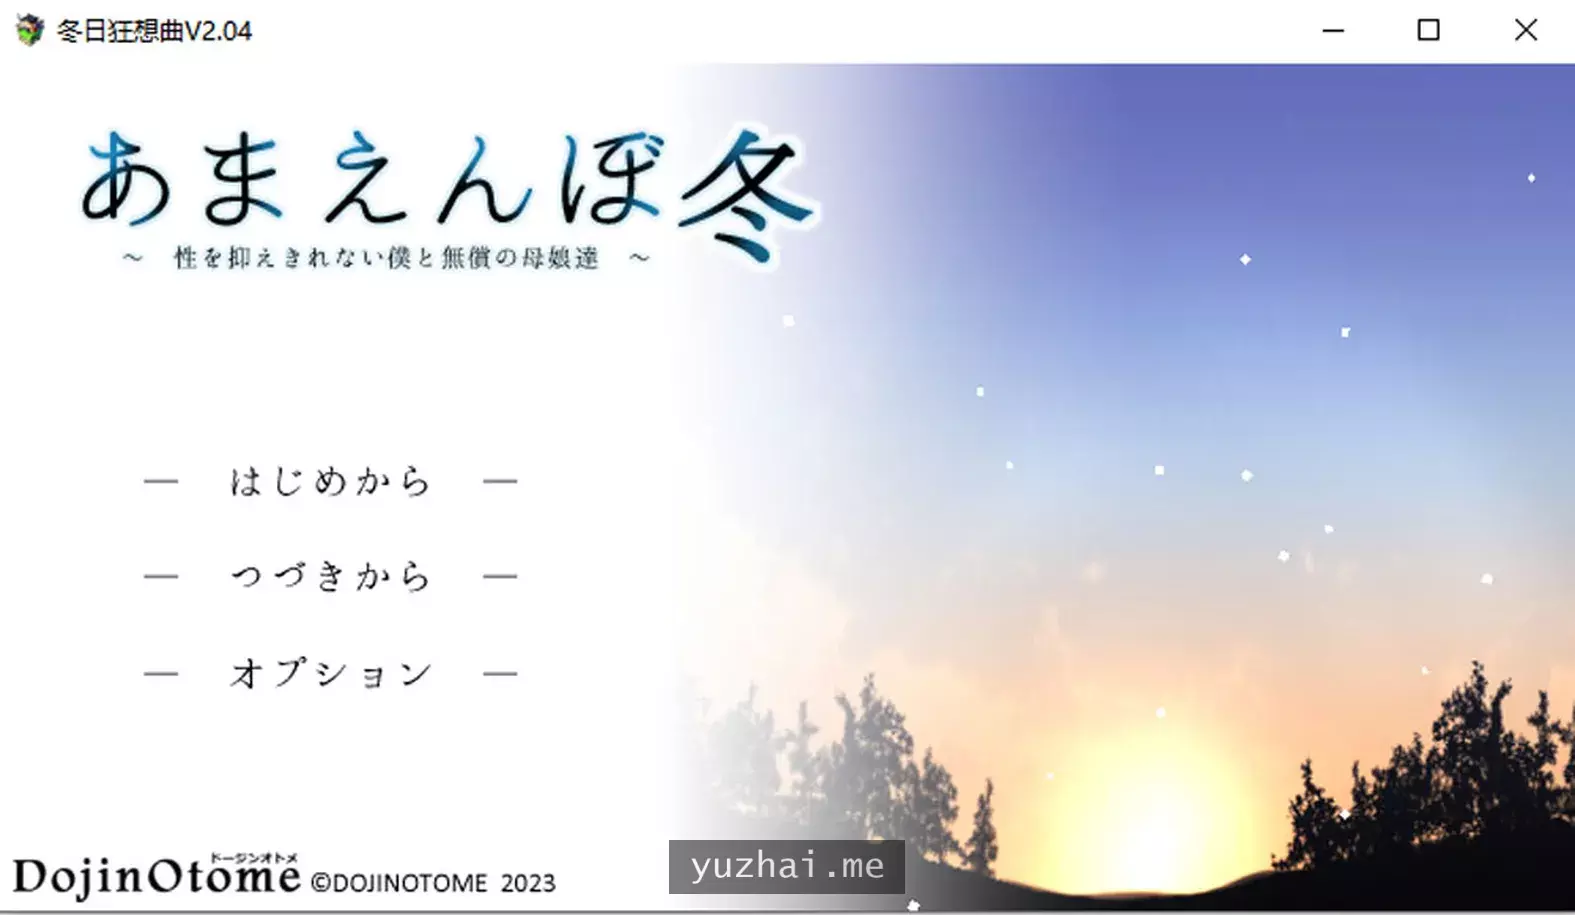 冬日狂想曲 Ver2.04 AI汉化正式版★CV[2.6G]